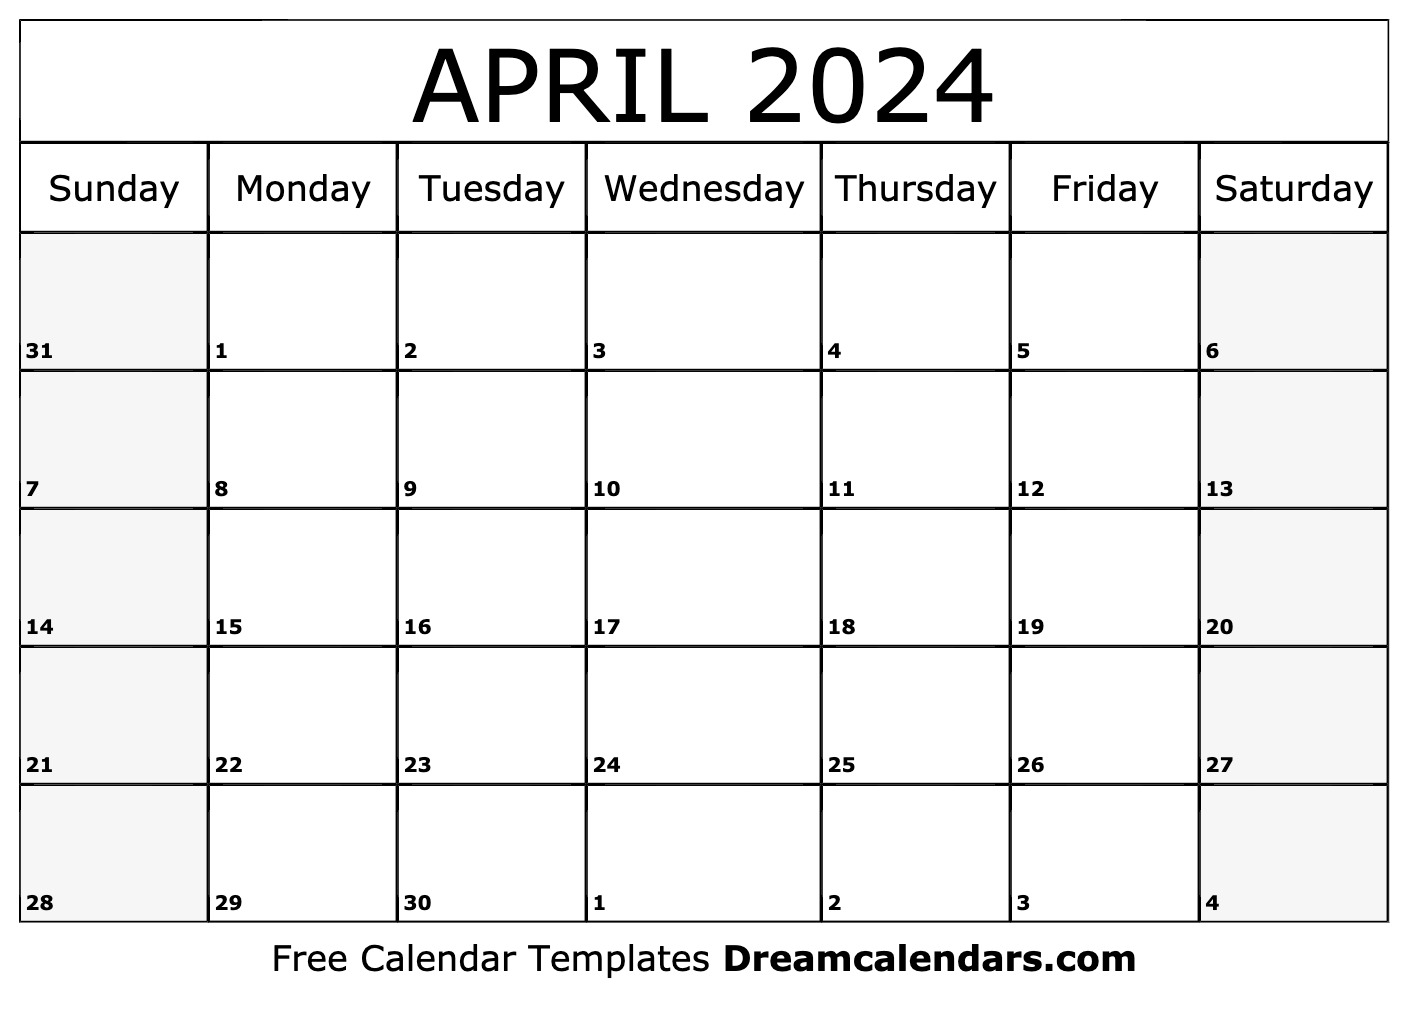 calendar-april-2024-ka-top-amazing-famous-january-2024-calendar-floral